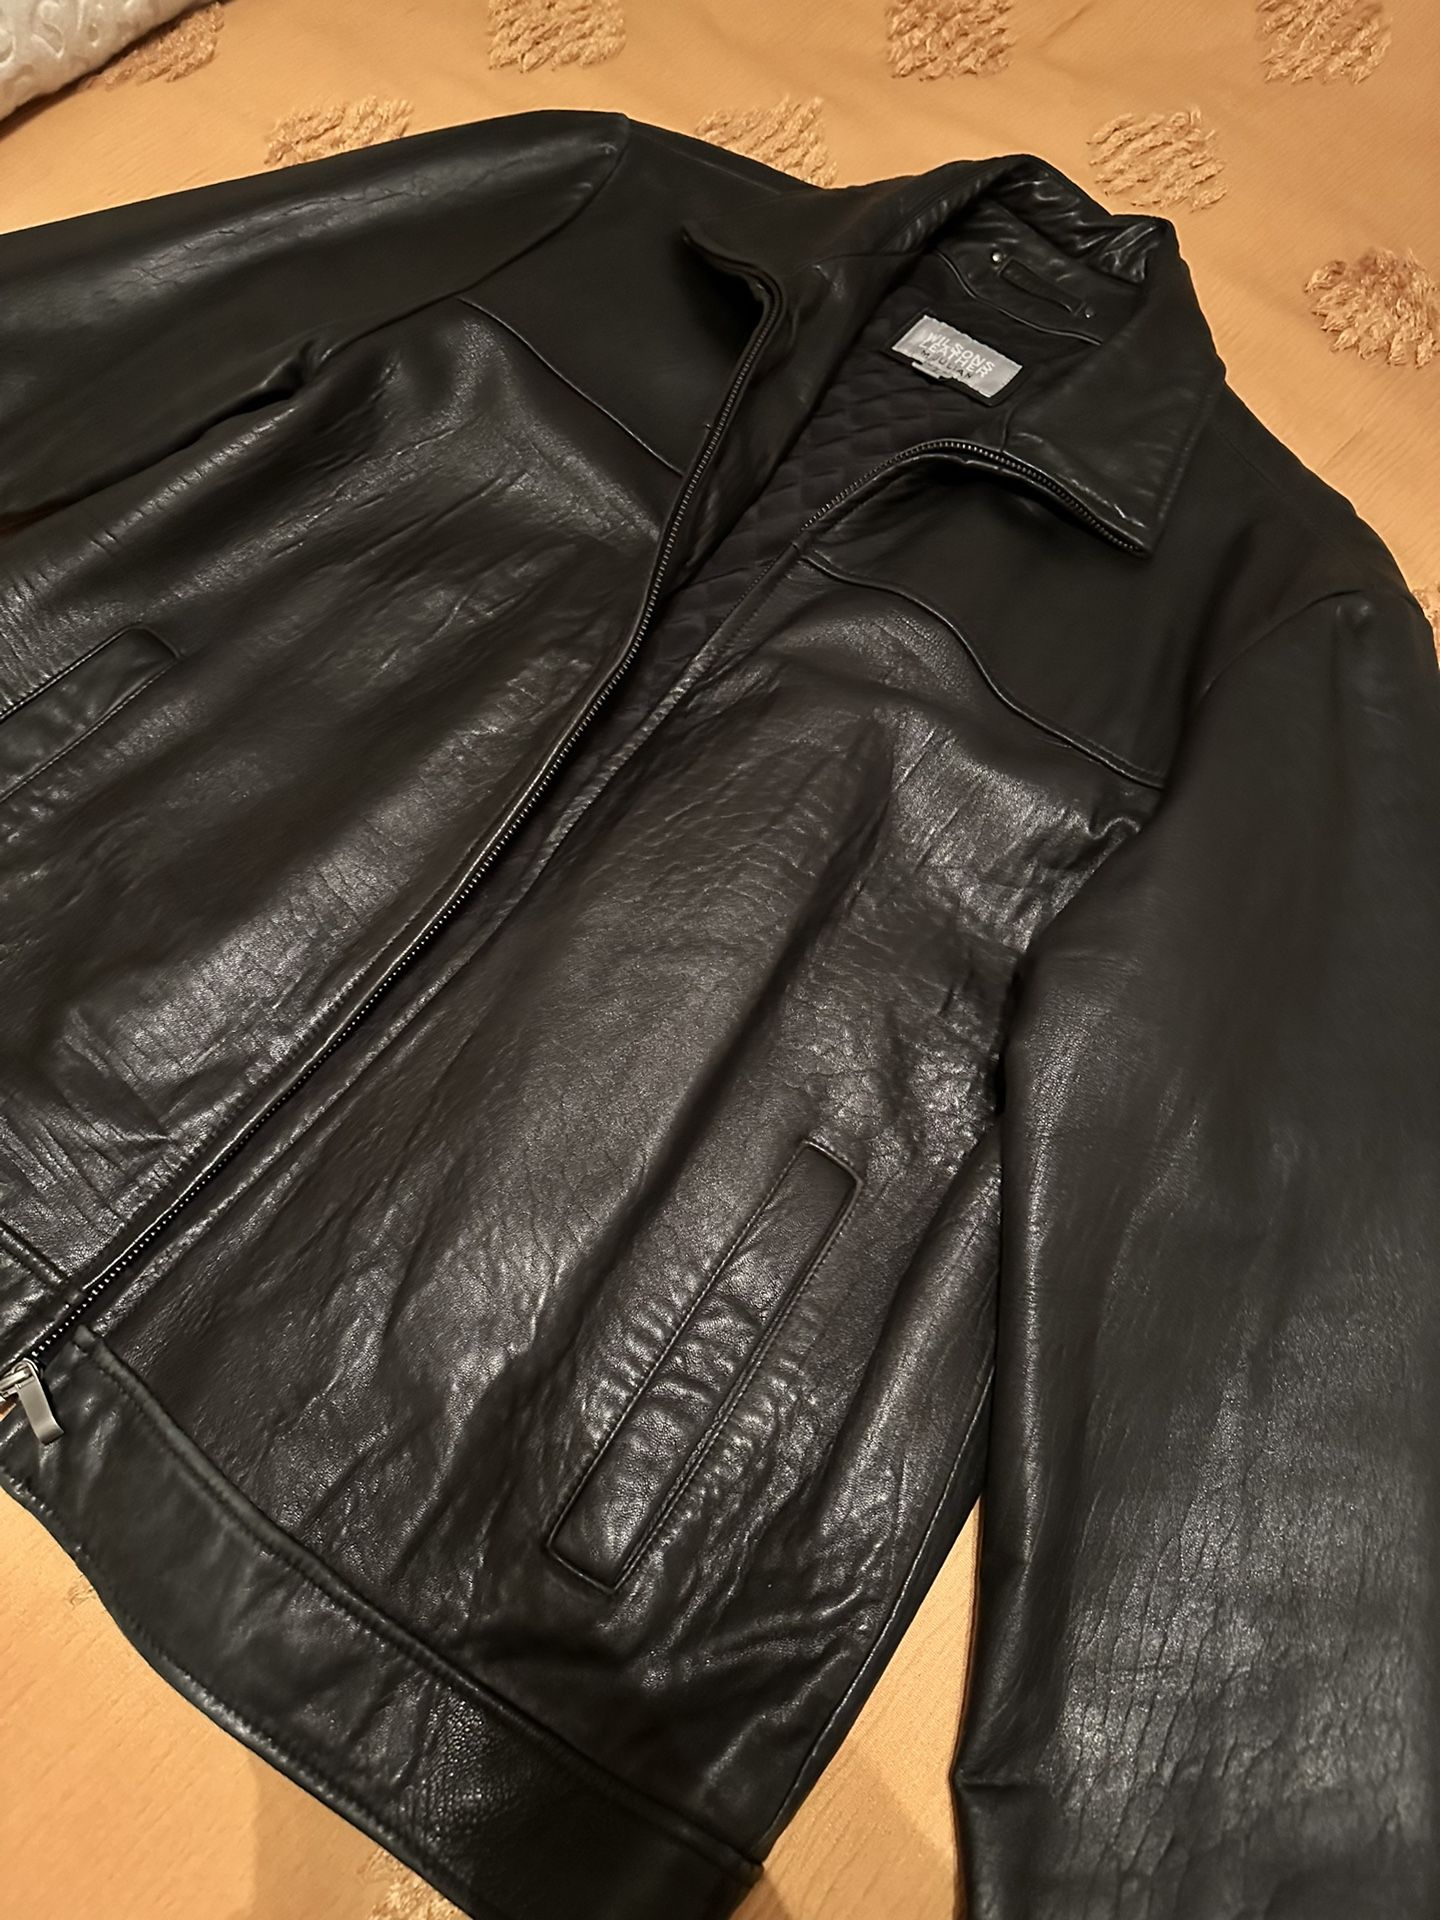 Leather Jacket - Large